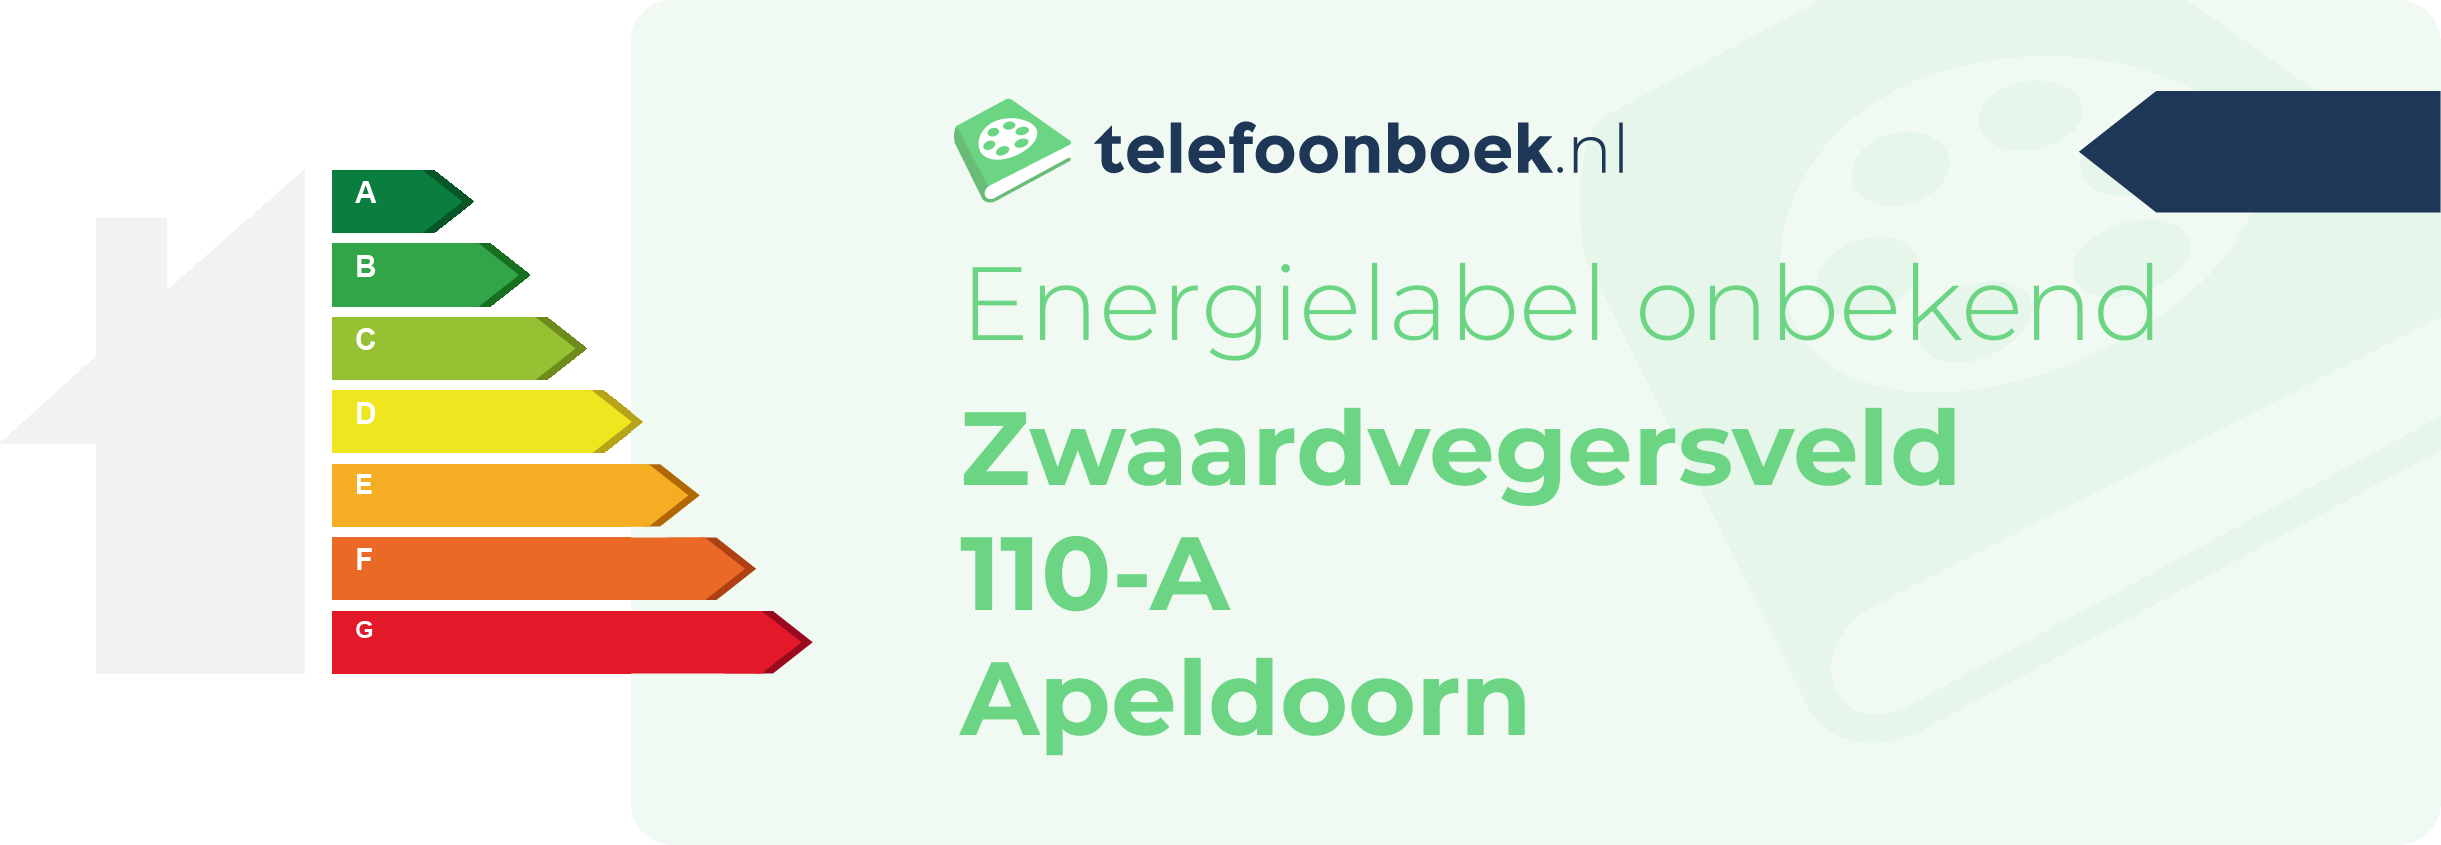 Energielabel Zwaardvegersveld 110-A Apeldoorn